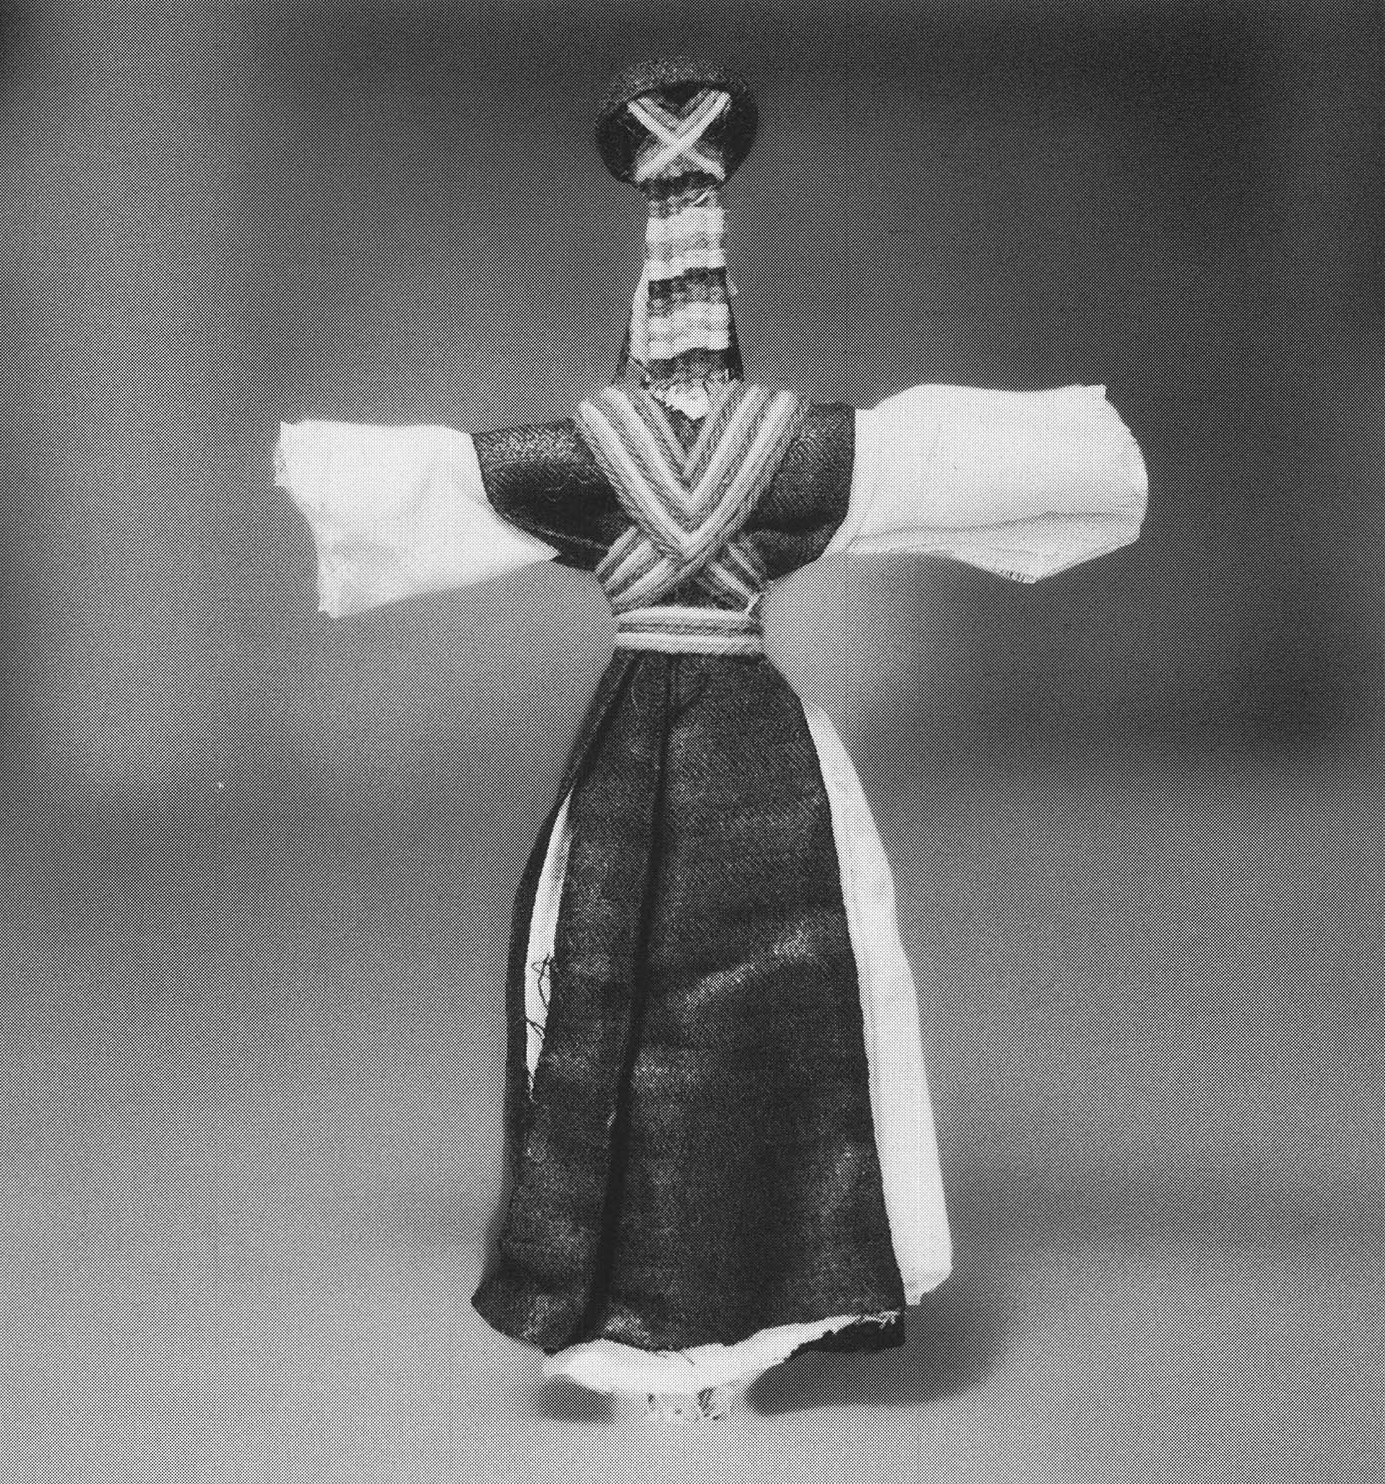  Poupée touarègue. Cette poupée montre un homme portant une tunique avec les fameux cordons dits « de noblesse », elmejdûden. http://encyclopedieberbere.revues.org.